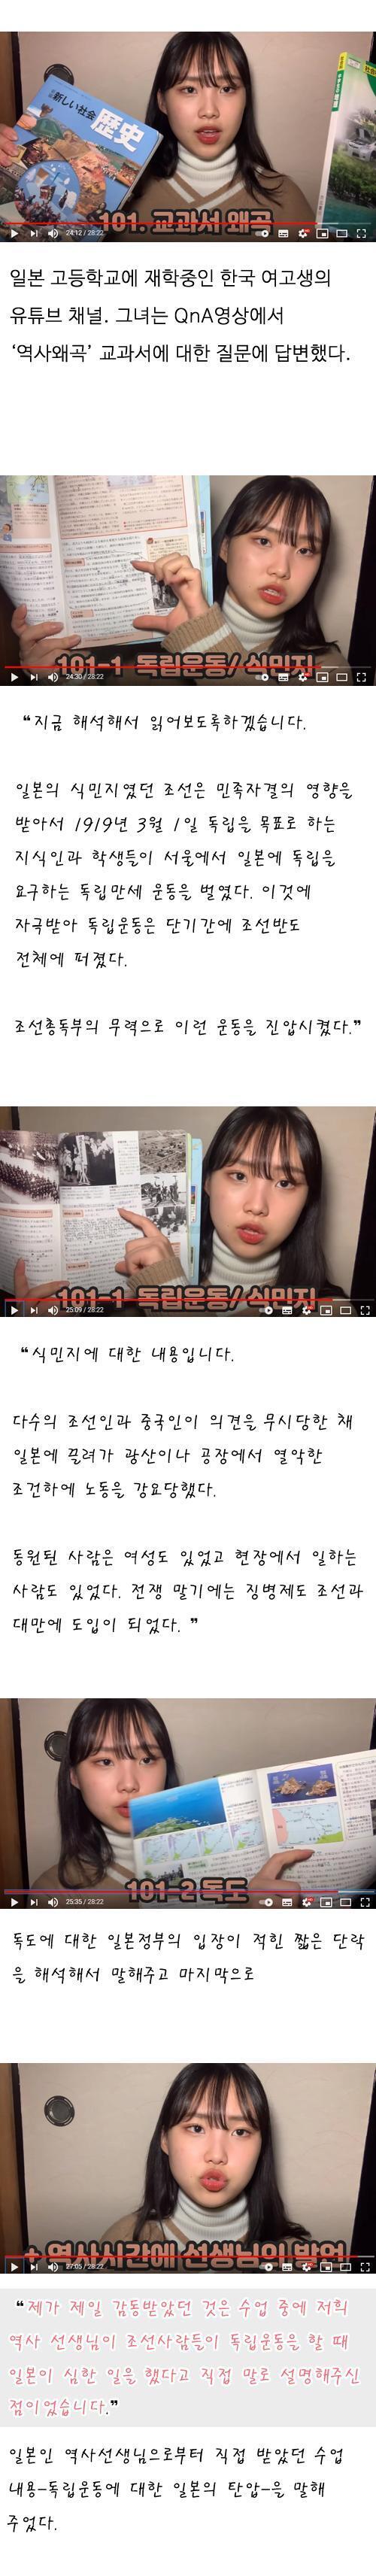 일본 고등학교 재학중인 한국 여학생이 의외로 일본 역사 교과서에 한국사 관련 왜곡이 없고 교사도 독립운동에 대한 탄압을 이야기하였다는 영상을 올렸다가 사과문 올렸대 생략한건